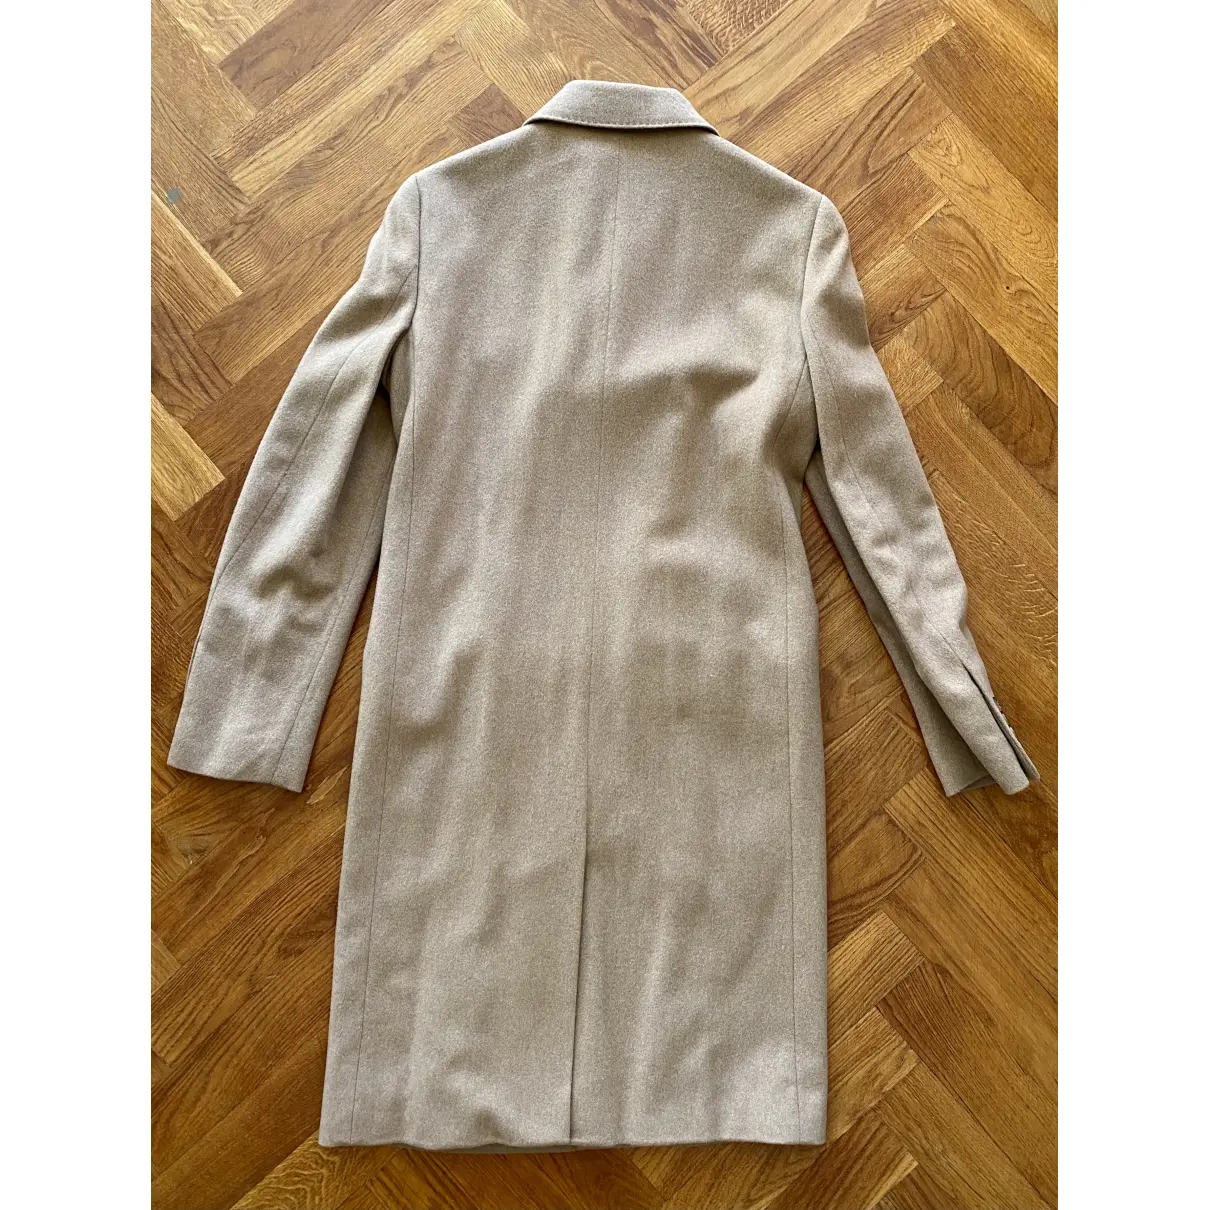 Buy Polo Ralph Lauren Wool coat online